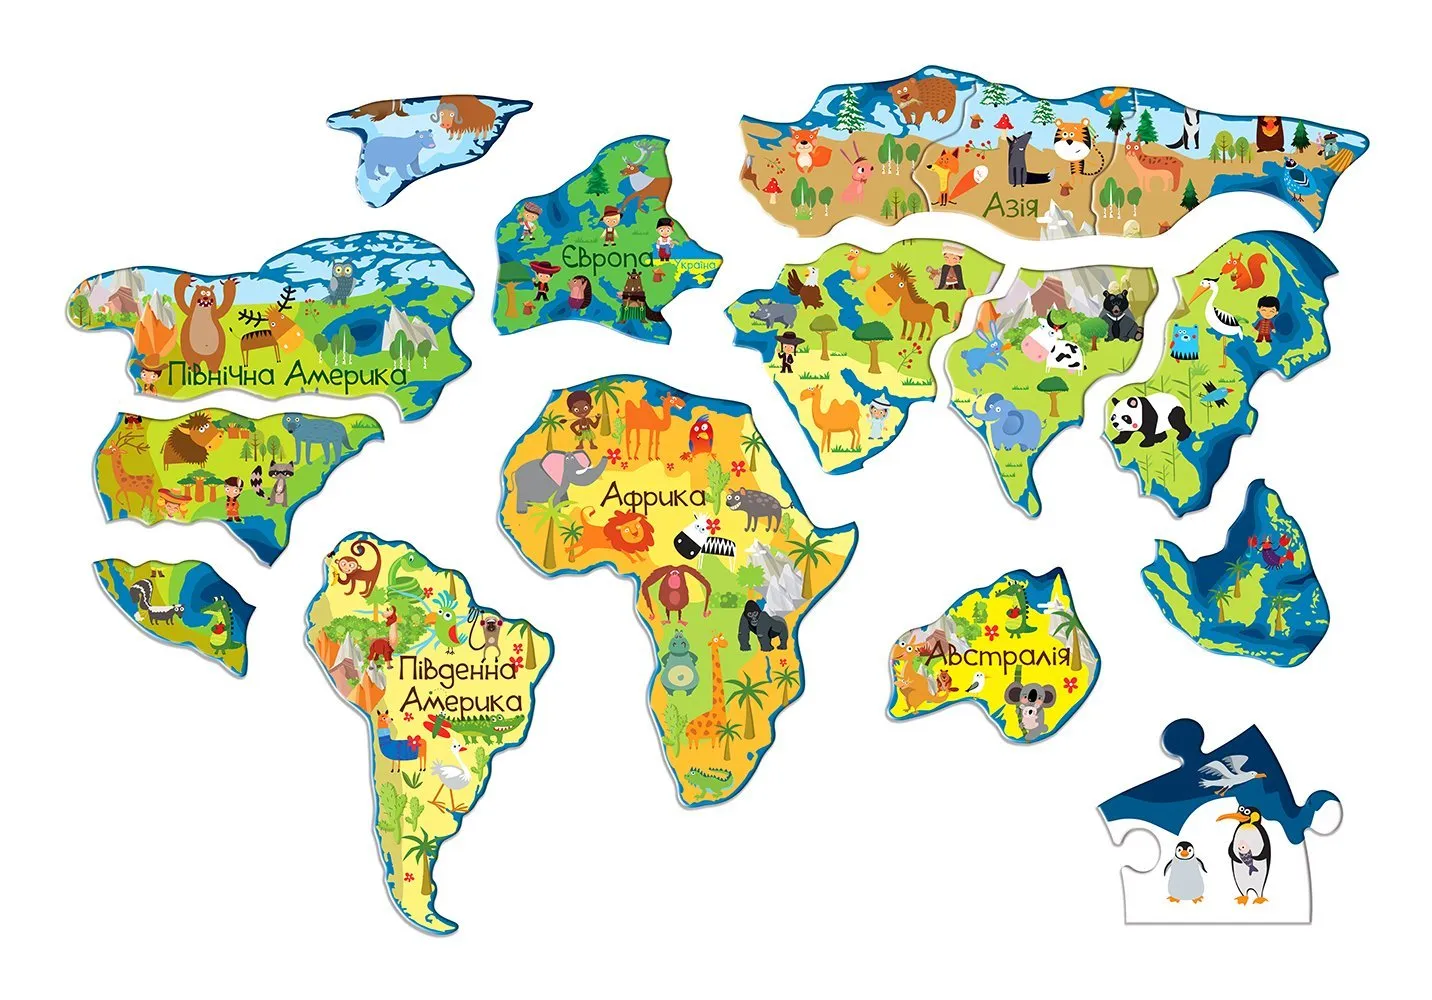 Континенты для дошкольников. Материки для дошкольников. Изображения материков для детей. Материки земли для дошкольников. Карта отдельных материков